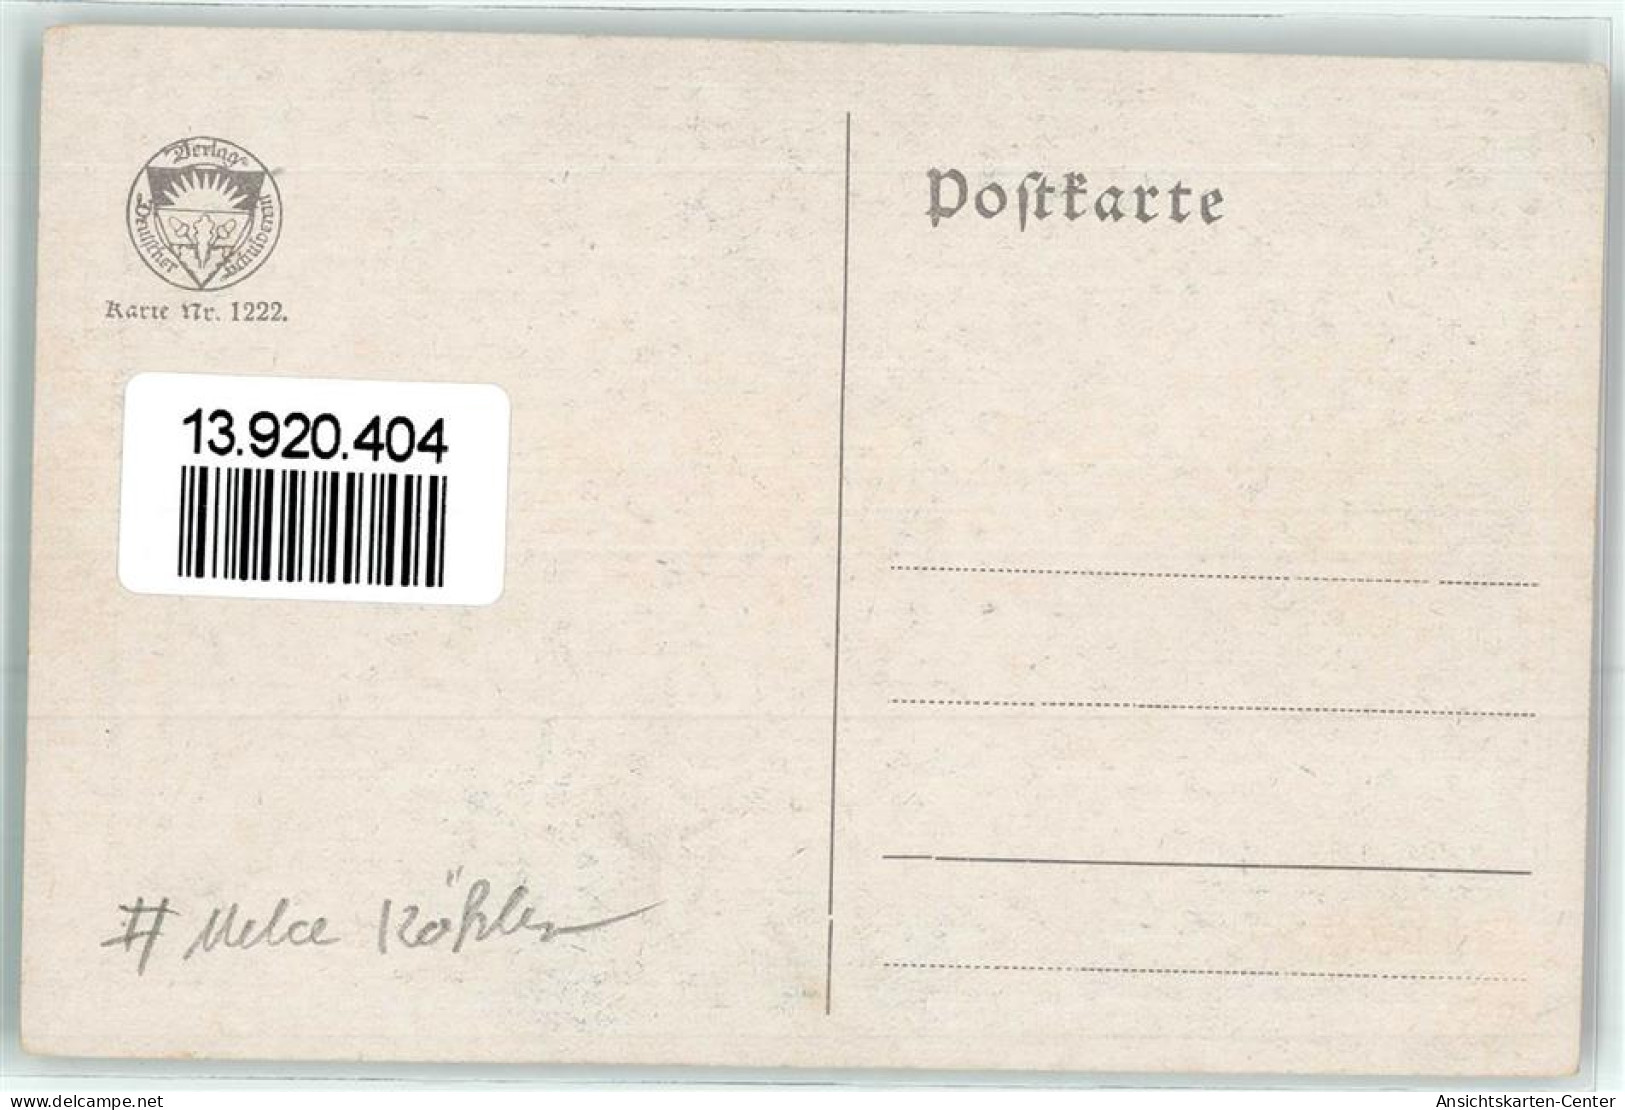 13920404 - Deutscher Schulverein Nr. 1222  Noten Liederkarte Poesie / Liebe - Koehler, Mela